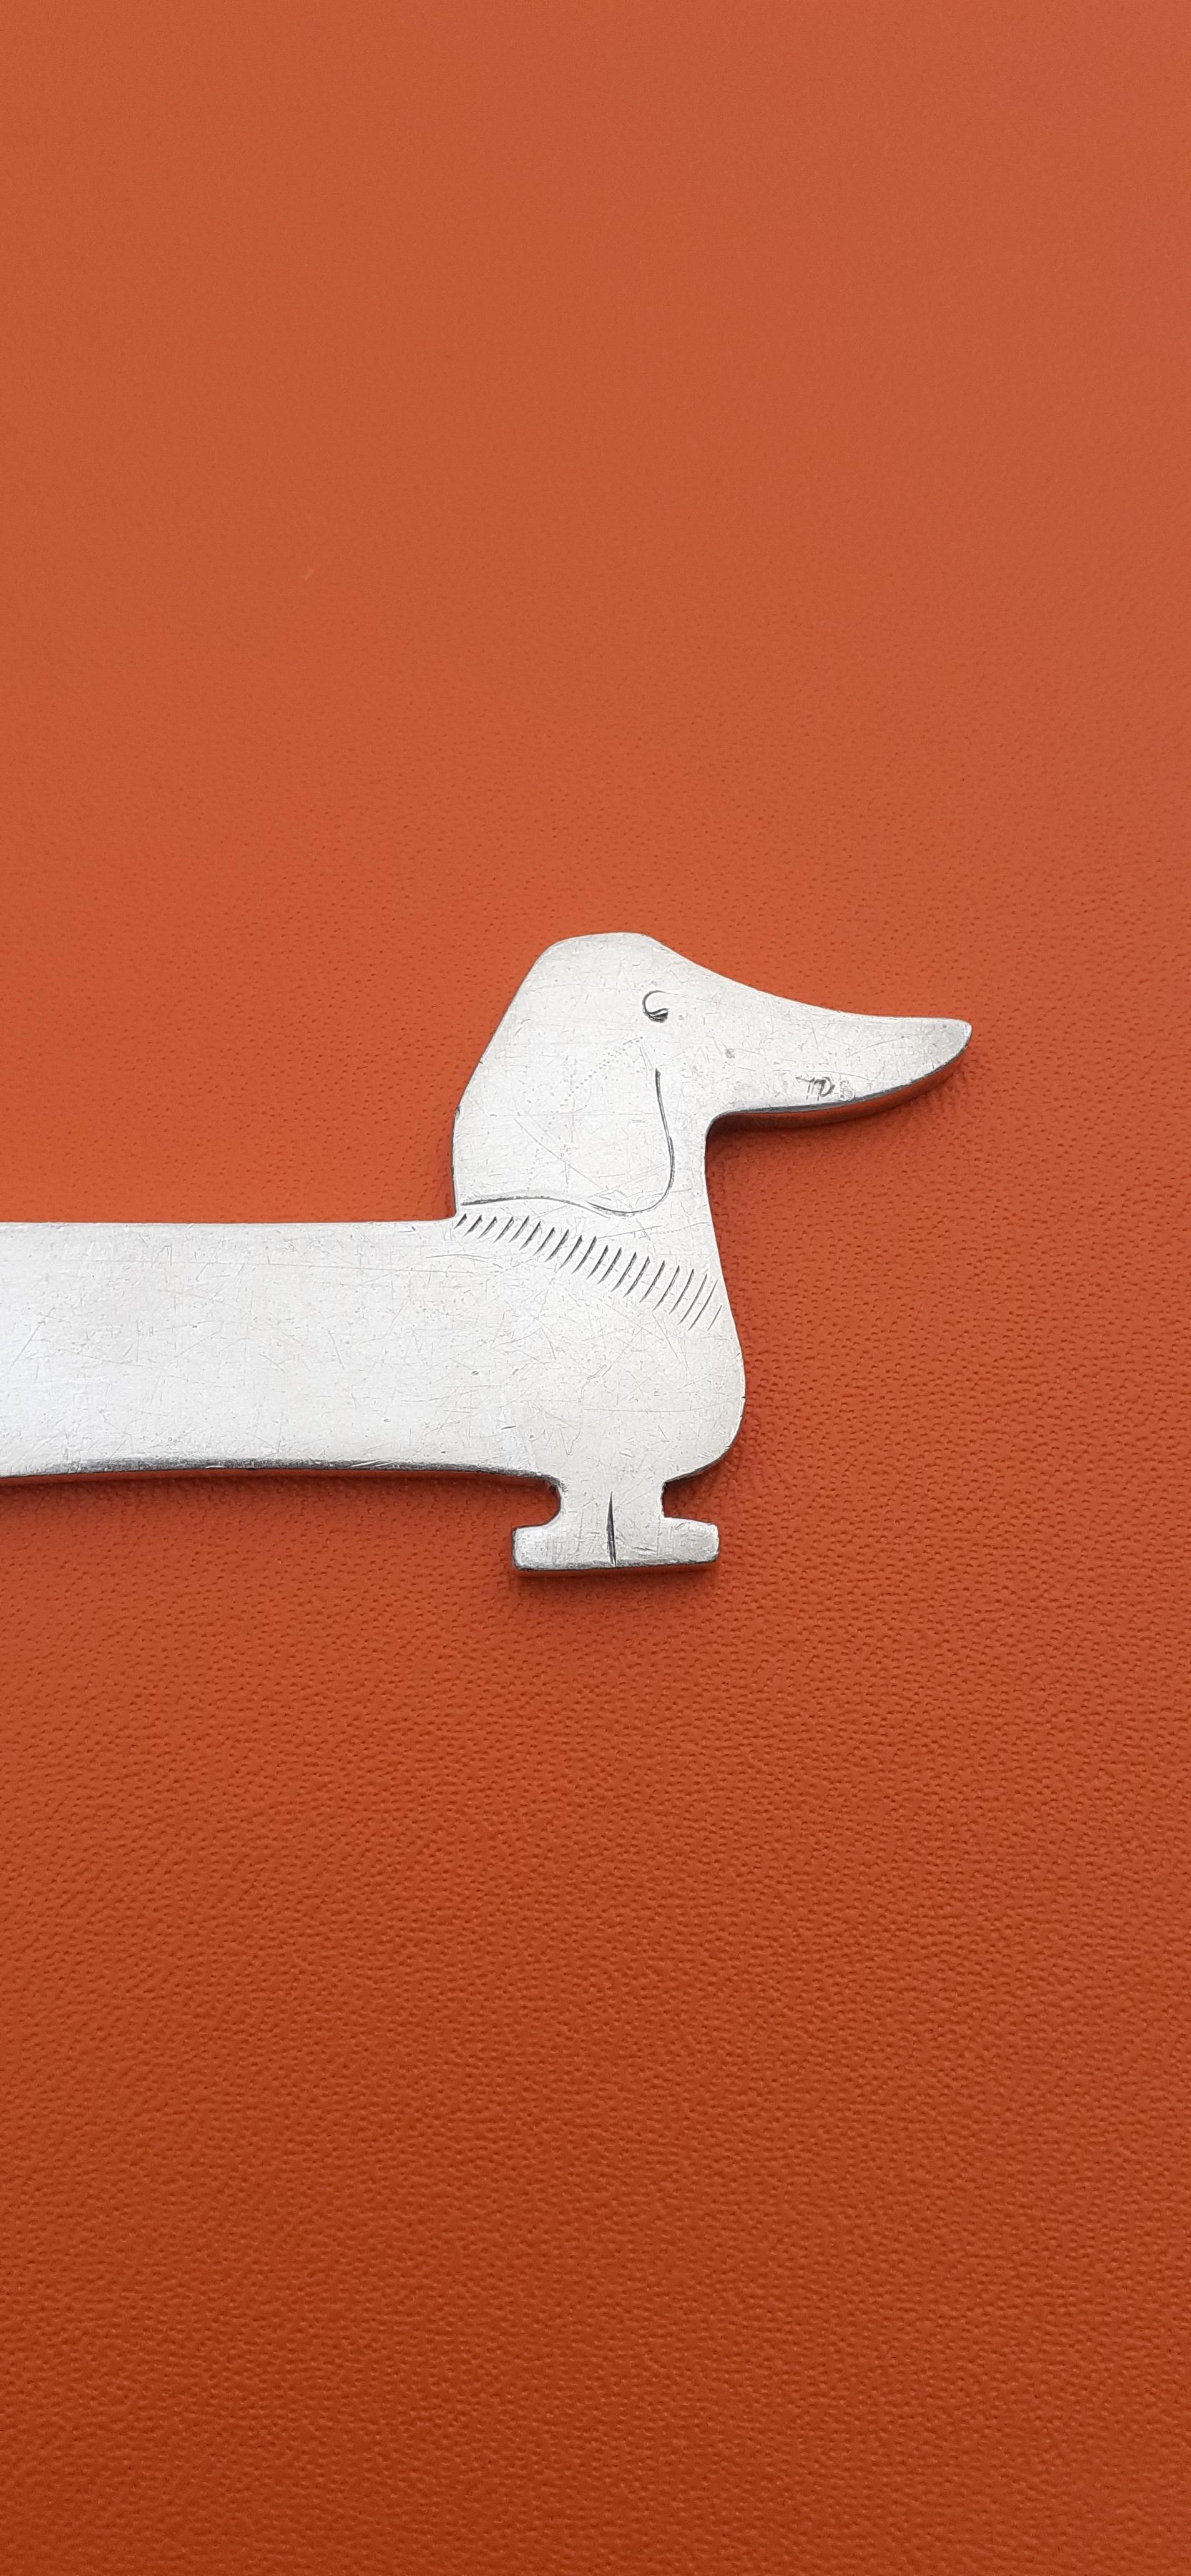 Außergewöhnlich authentischer Hermès Brieföffner

Absolut atemberaubend, ein seltenes Sammlerstück

Dackel Hund geformt

Vintage Artikel ! Super Rare, ein Gral

Hergestellt aus Nicht-Edelmetall

Farbgebung: silbern

